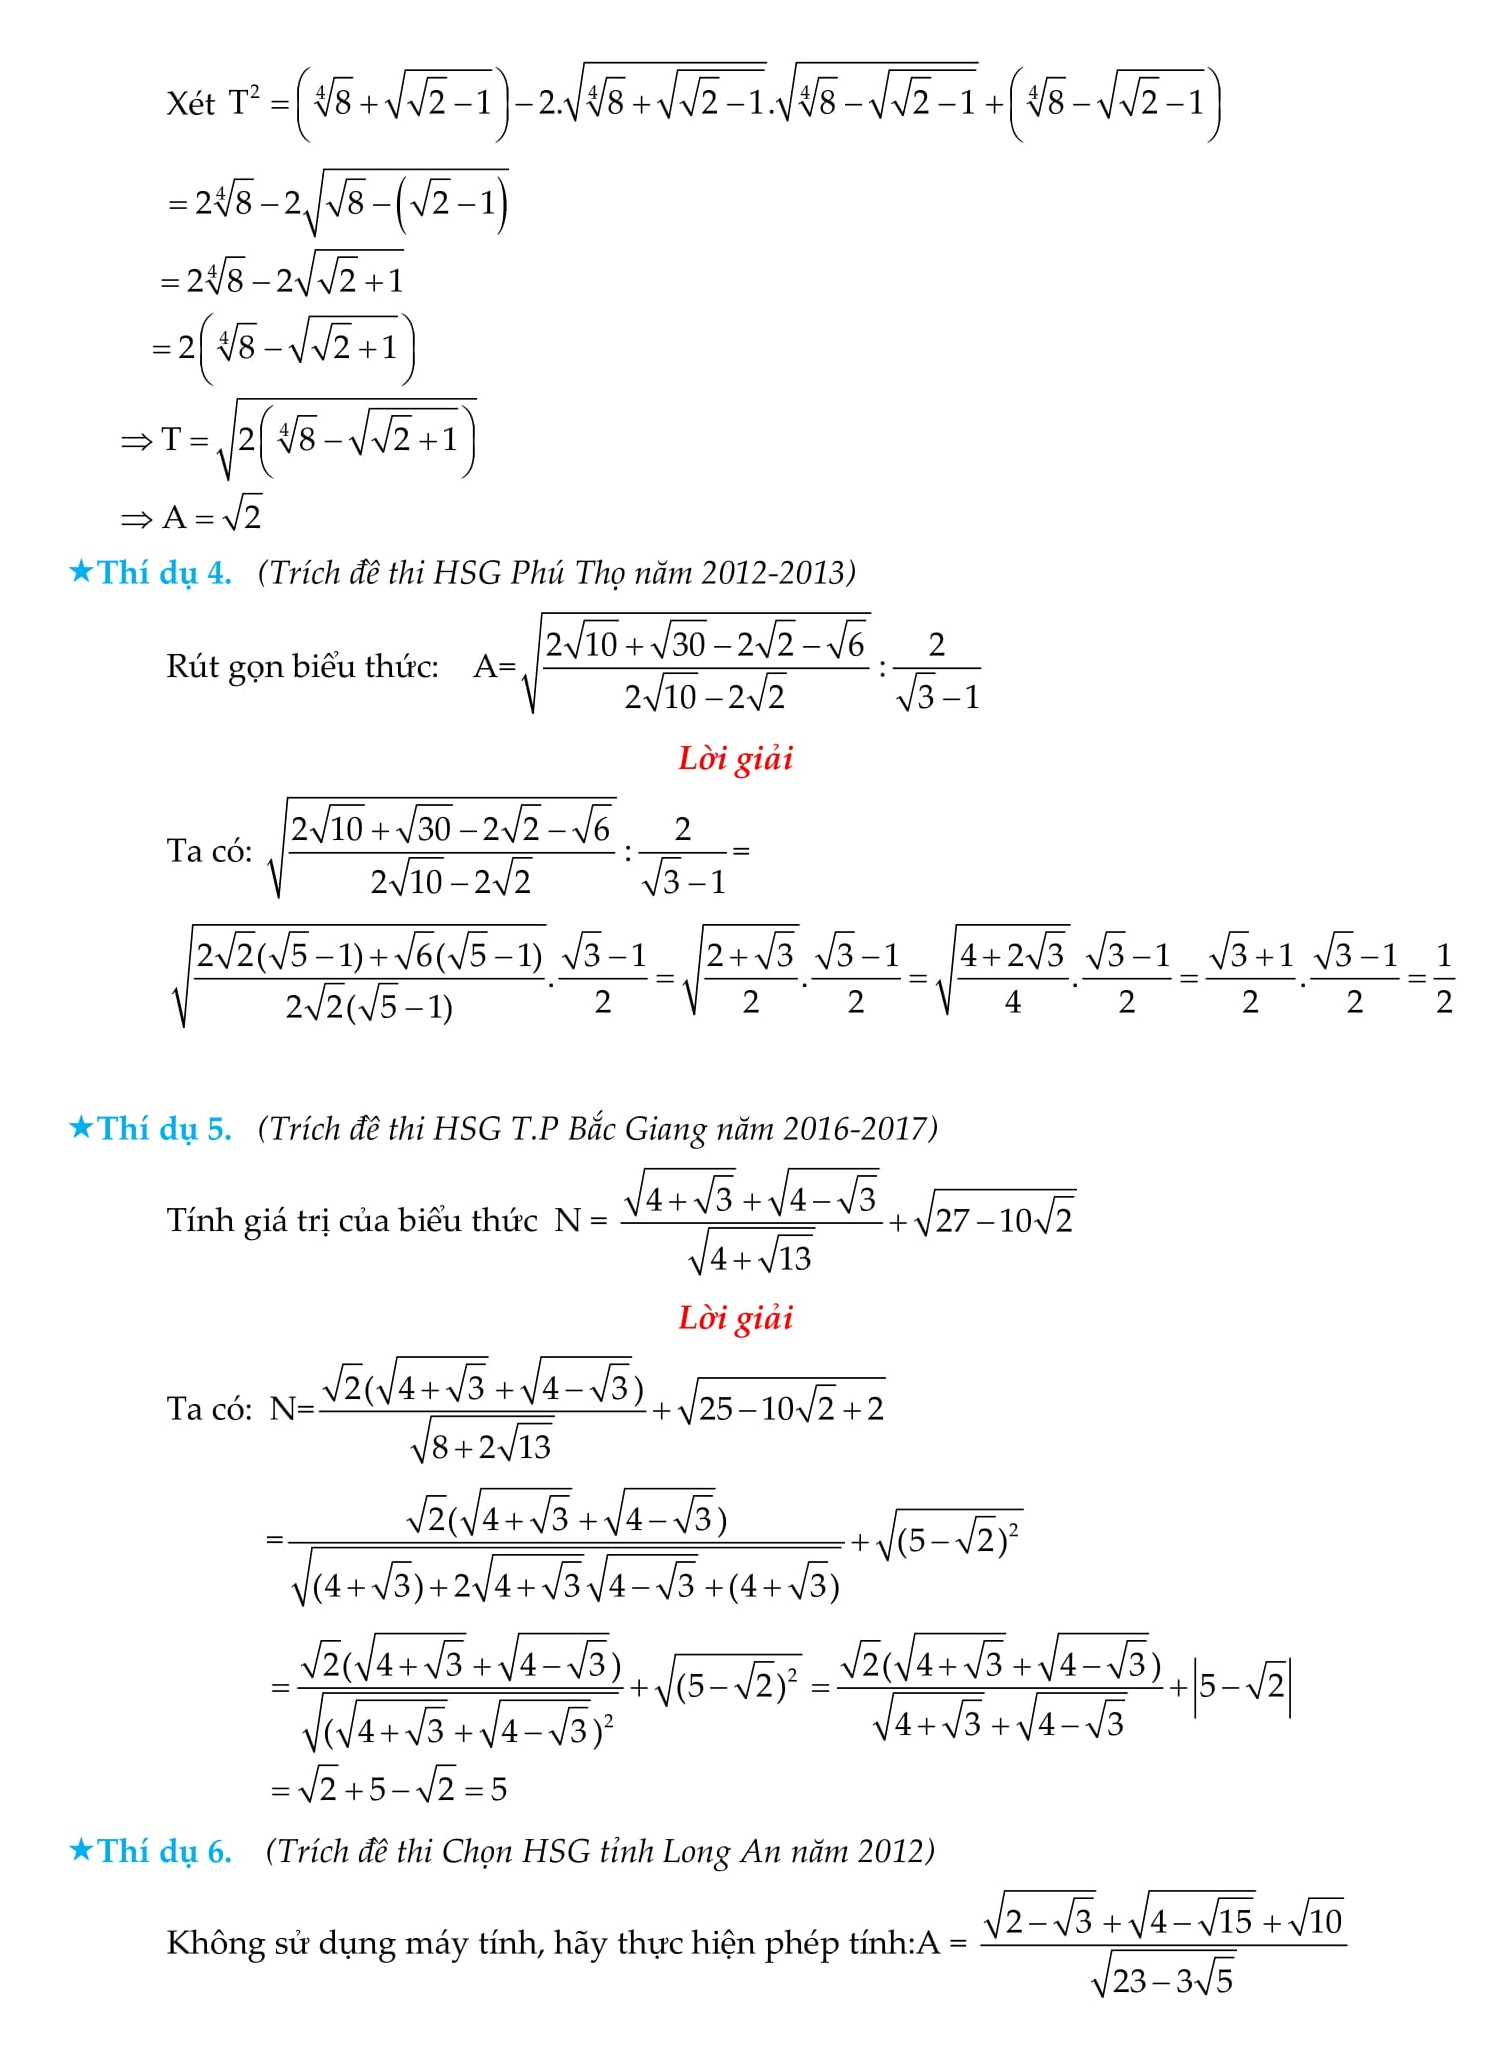 Rút gọn căn thức bậc hai và những bài toán liên quan